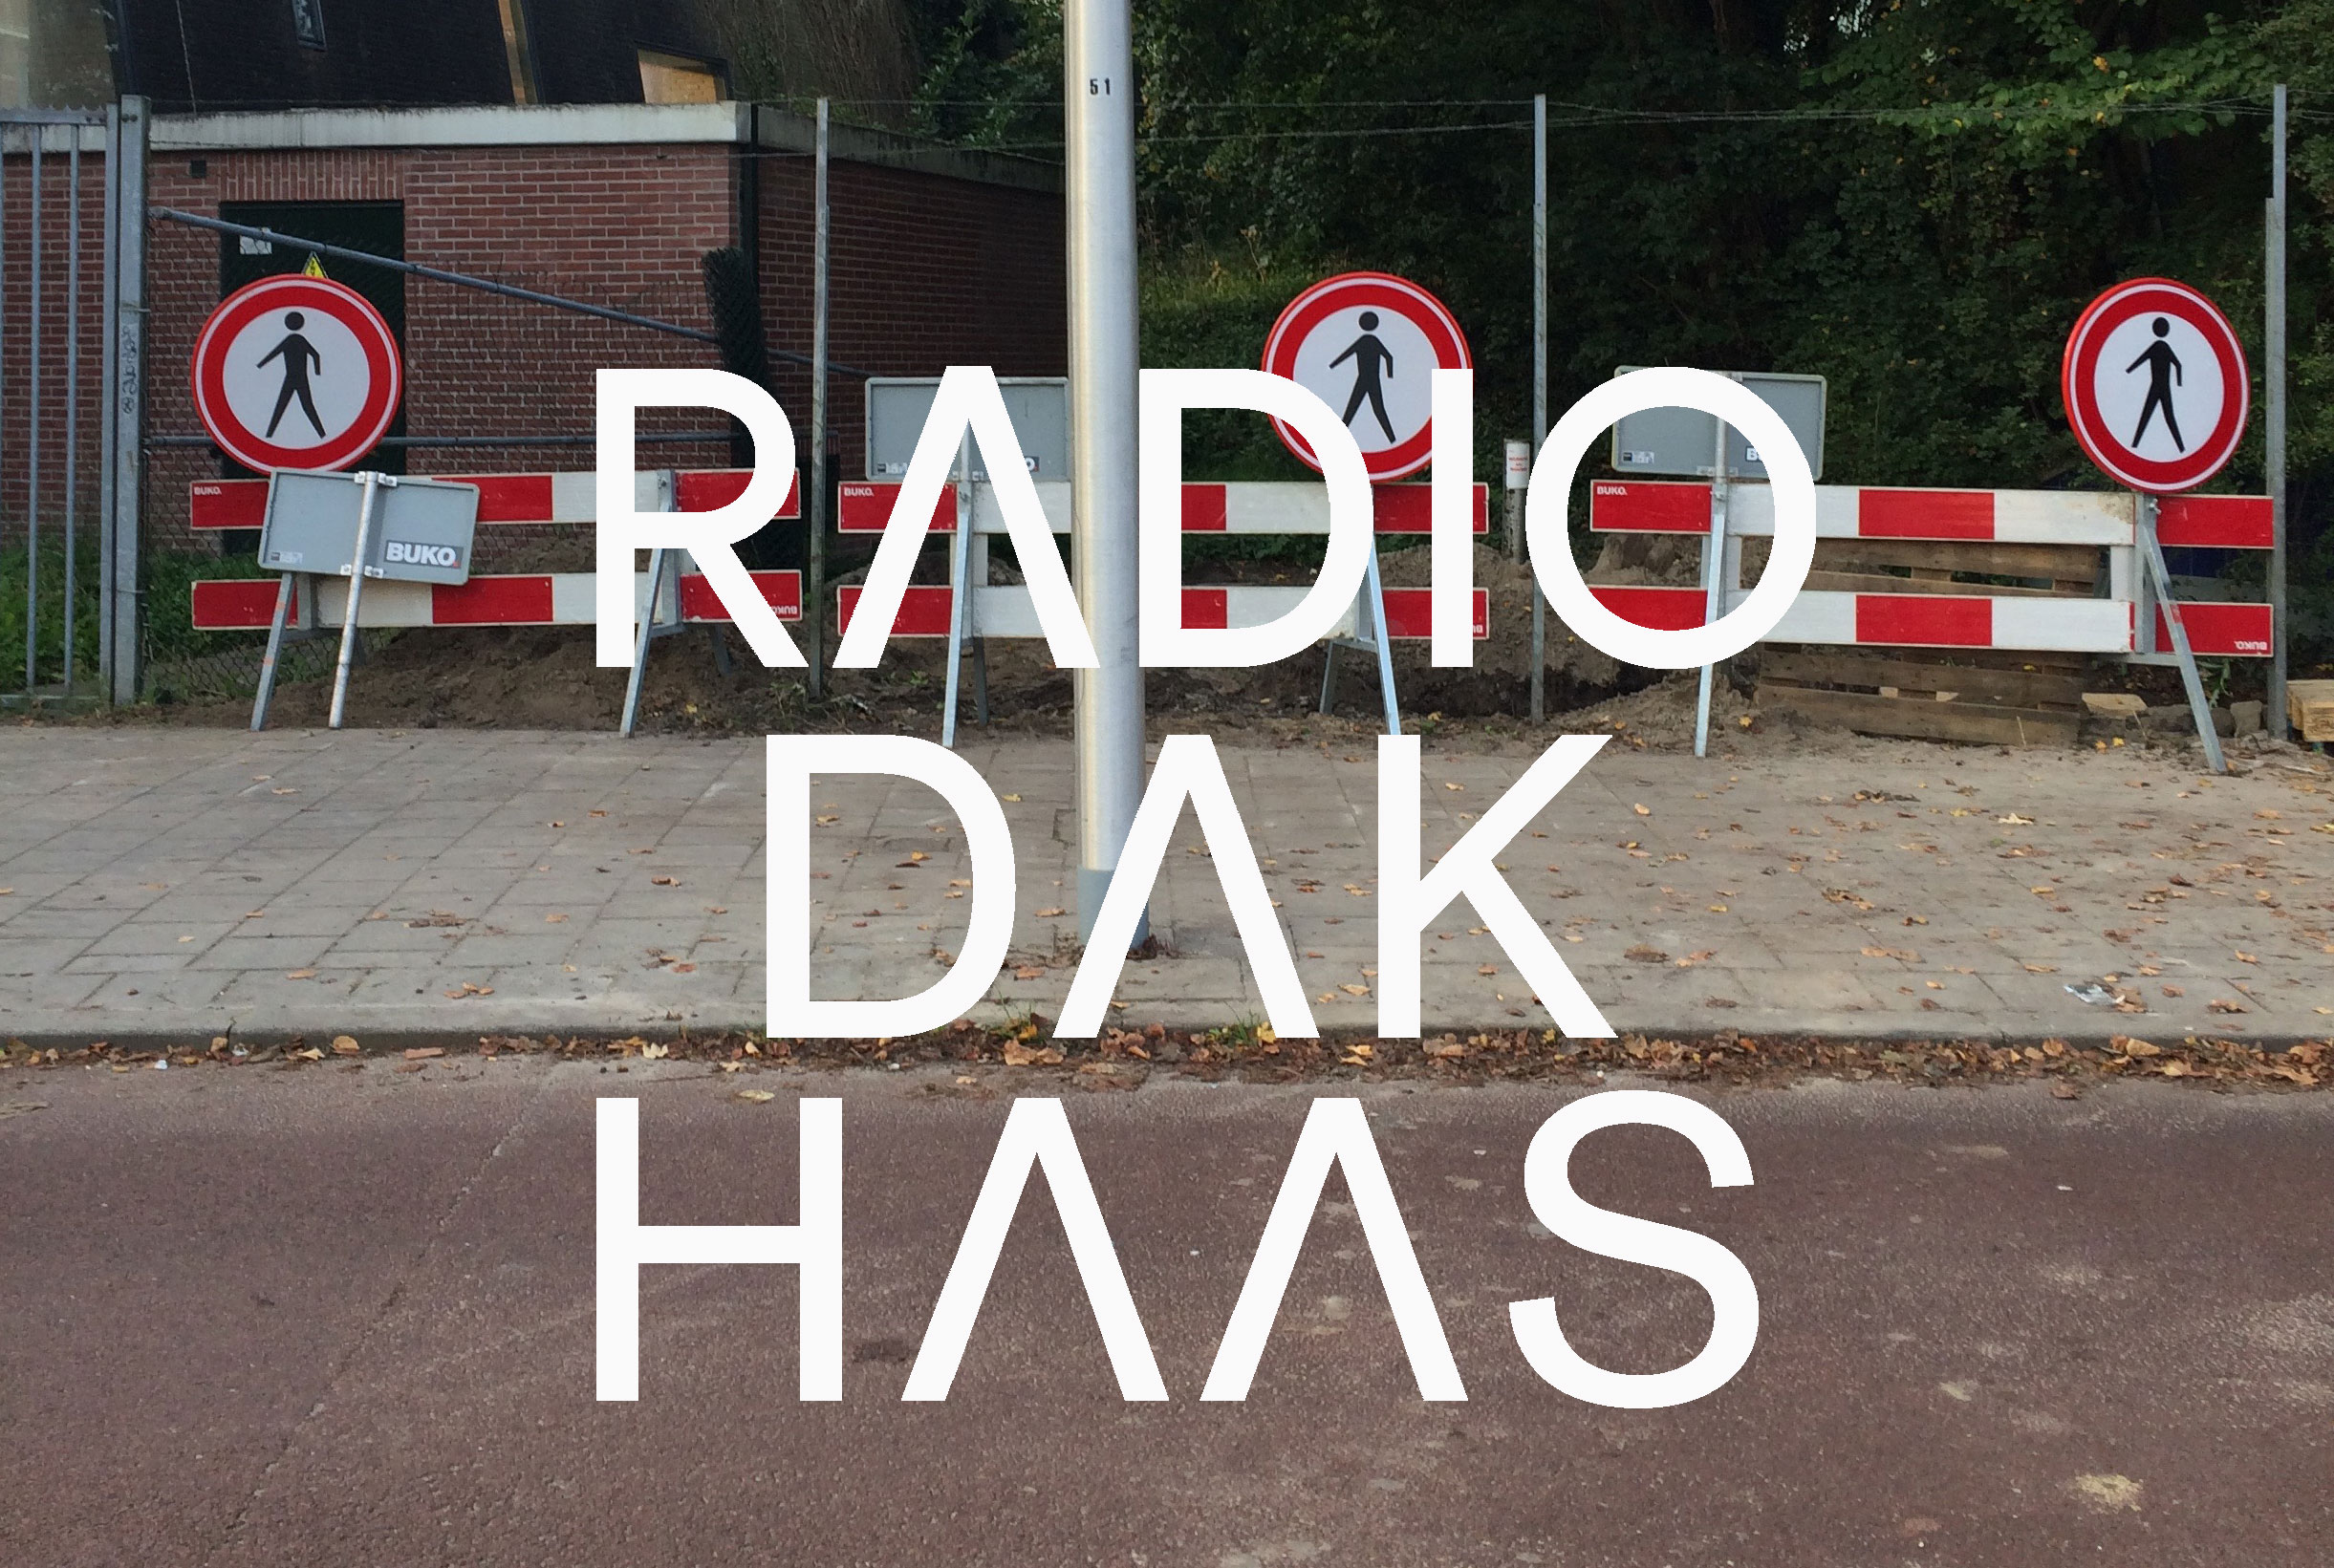 Radio Dakhaas Dat Mag Niet 2: Polyamorie, ethiek in de mode, geld jatten & meer